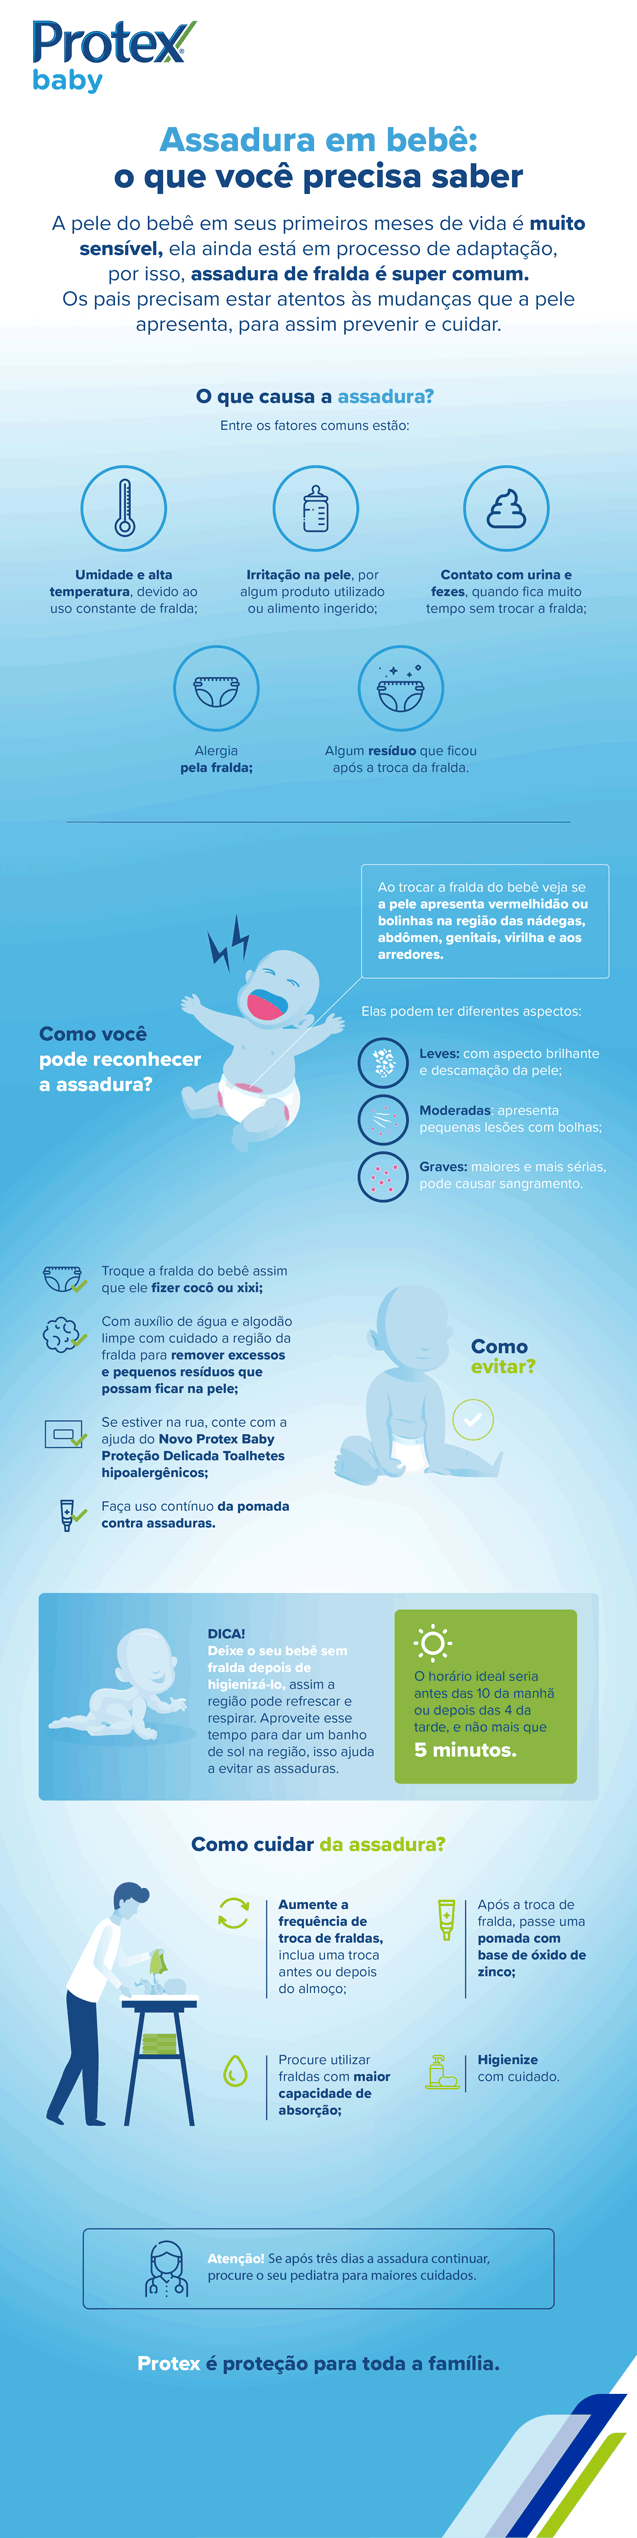 Infográfico com o que é preciso saber sobre assadura em bebê, como as causas, as maneiras de reconhecer, dicas e como cuidar da assadura em bebê